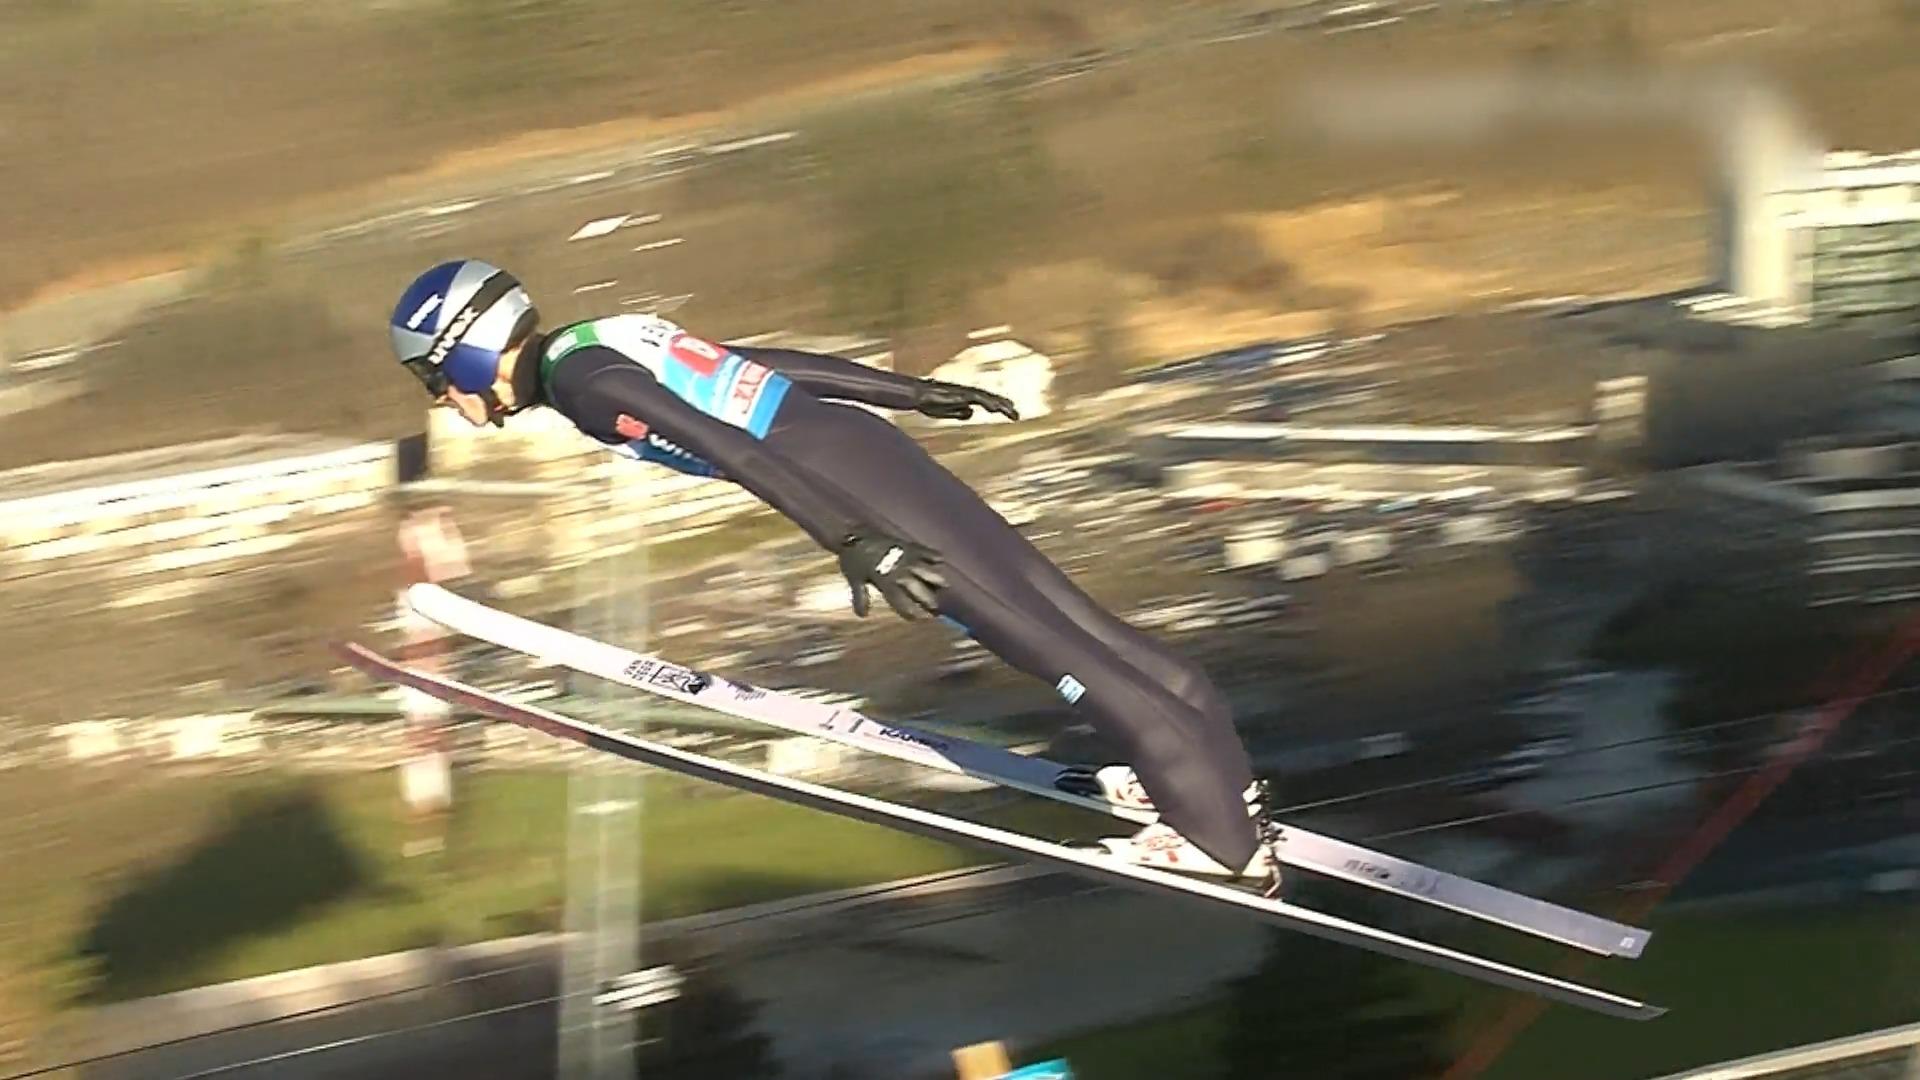 Deutsche Skispringer bei Vierschanzentournee chancenlos Gesamtsieg schon jetzt futsch